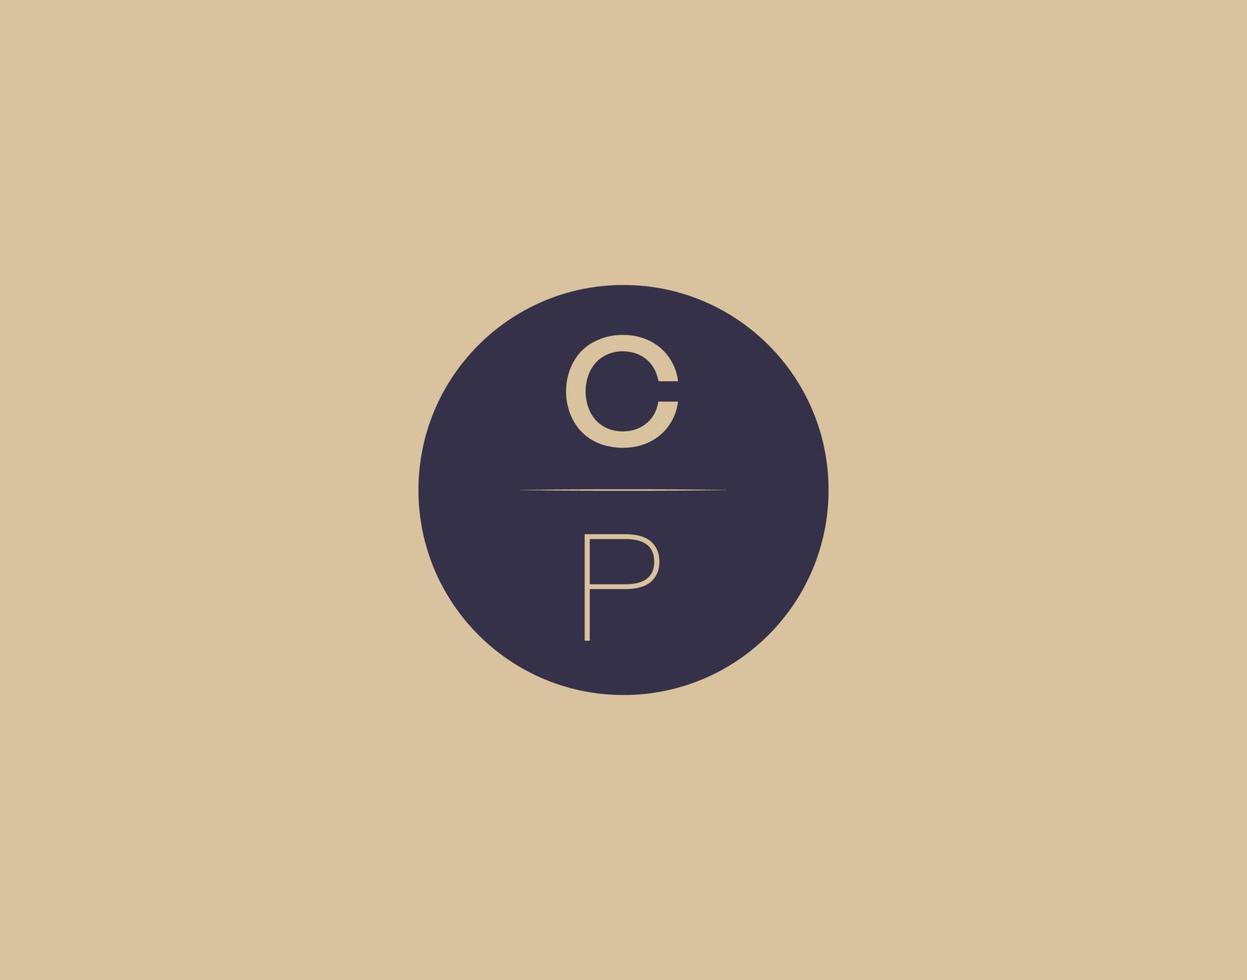 CP letter modern elegant logo design vector images